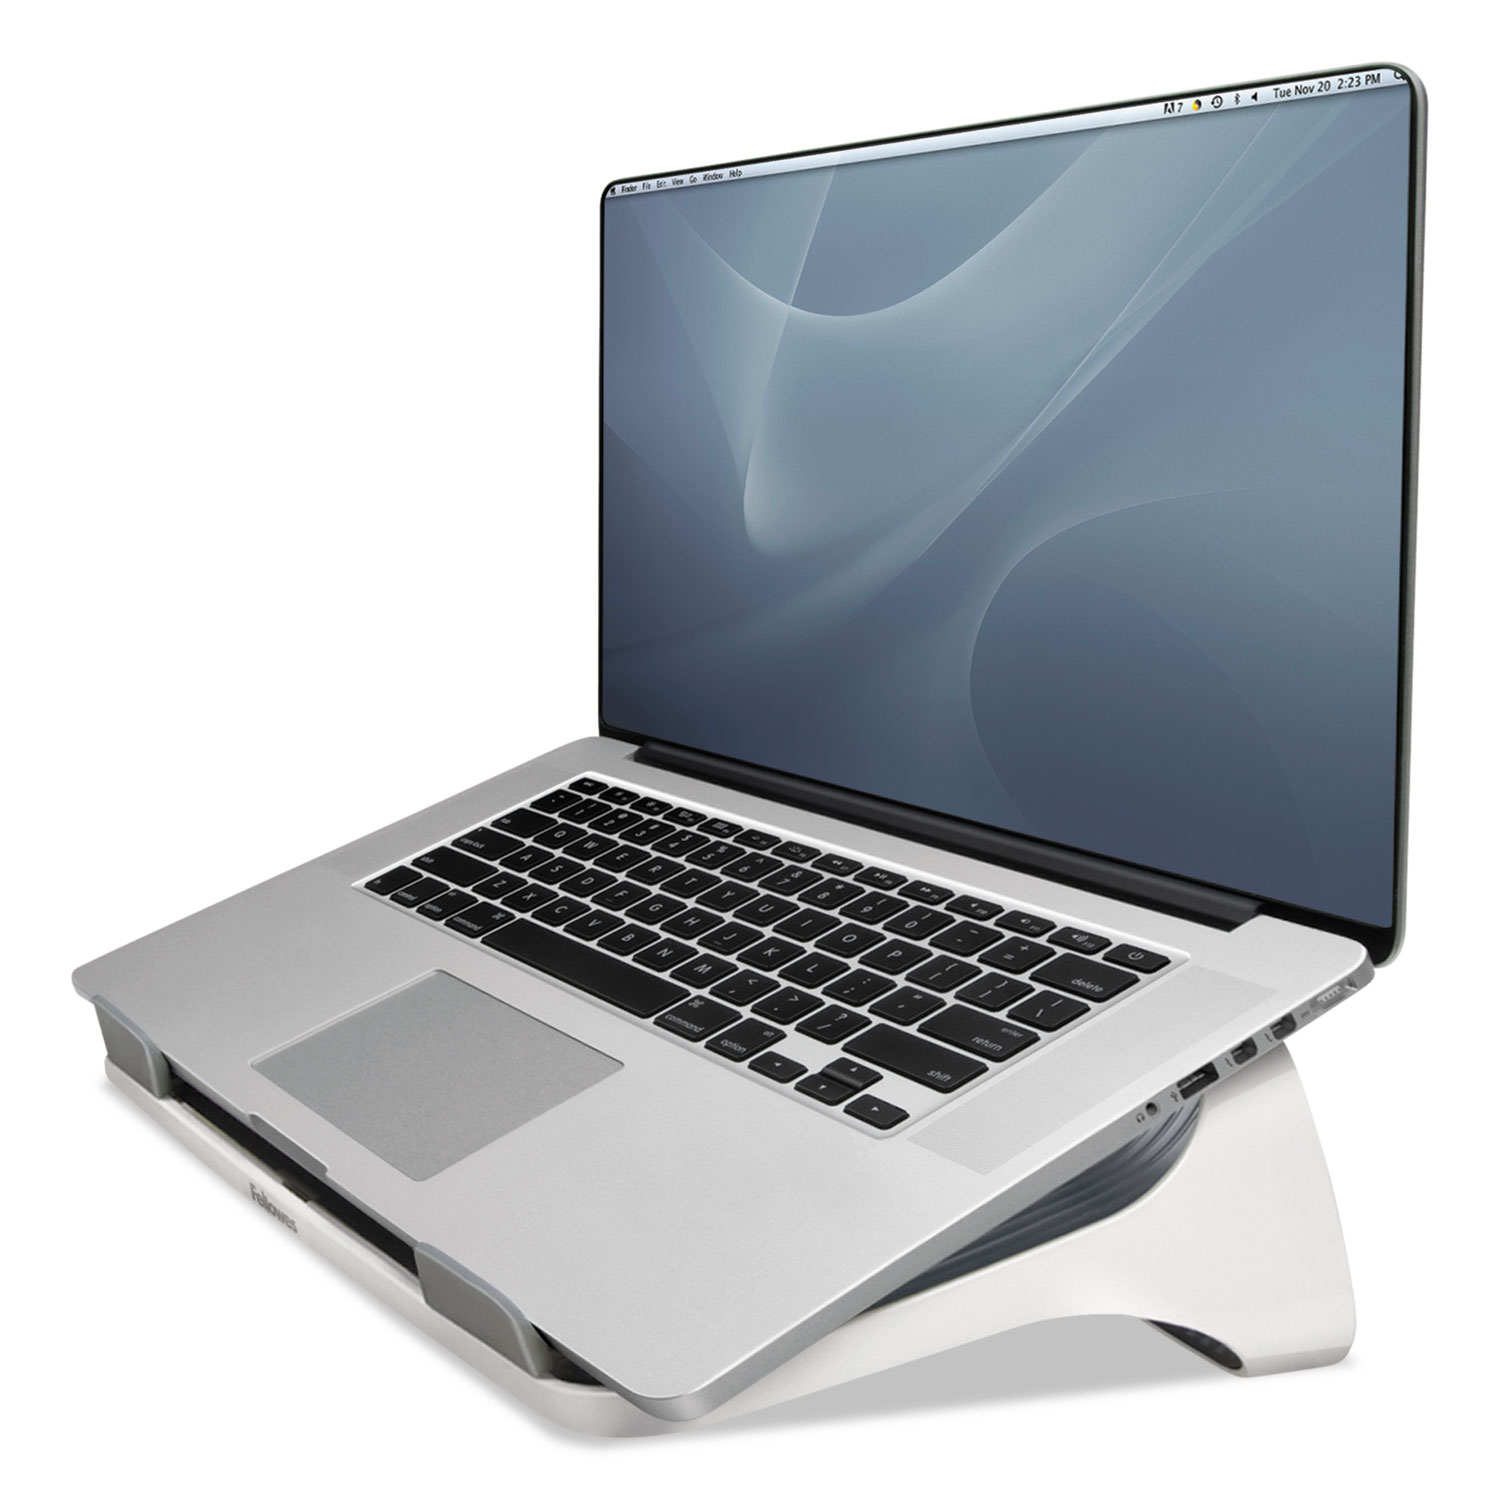 Laptop Riser, 13 3/16 x 9 5/16 x 4 1/8, White/Gray